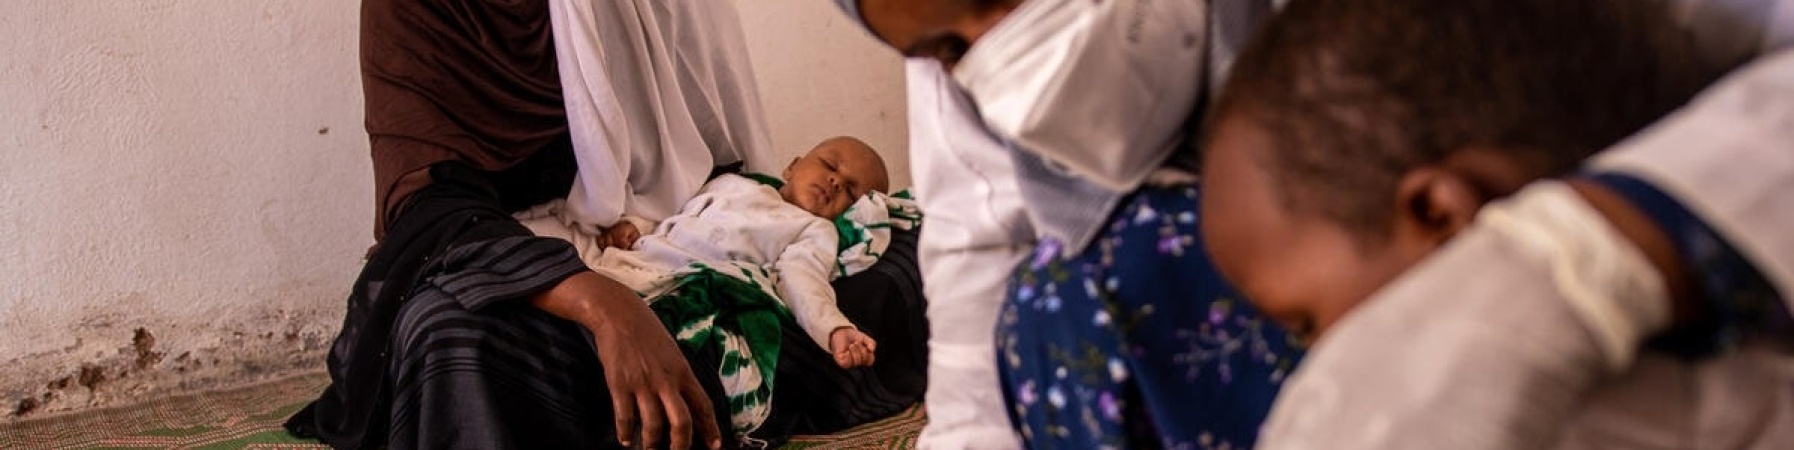 bambino somalo in primo piano mentre gli viene misurato dall operatrice la malnutrizione e sullo sfondo donna con bambino piccolo sulle gambe 